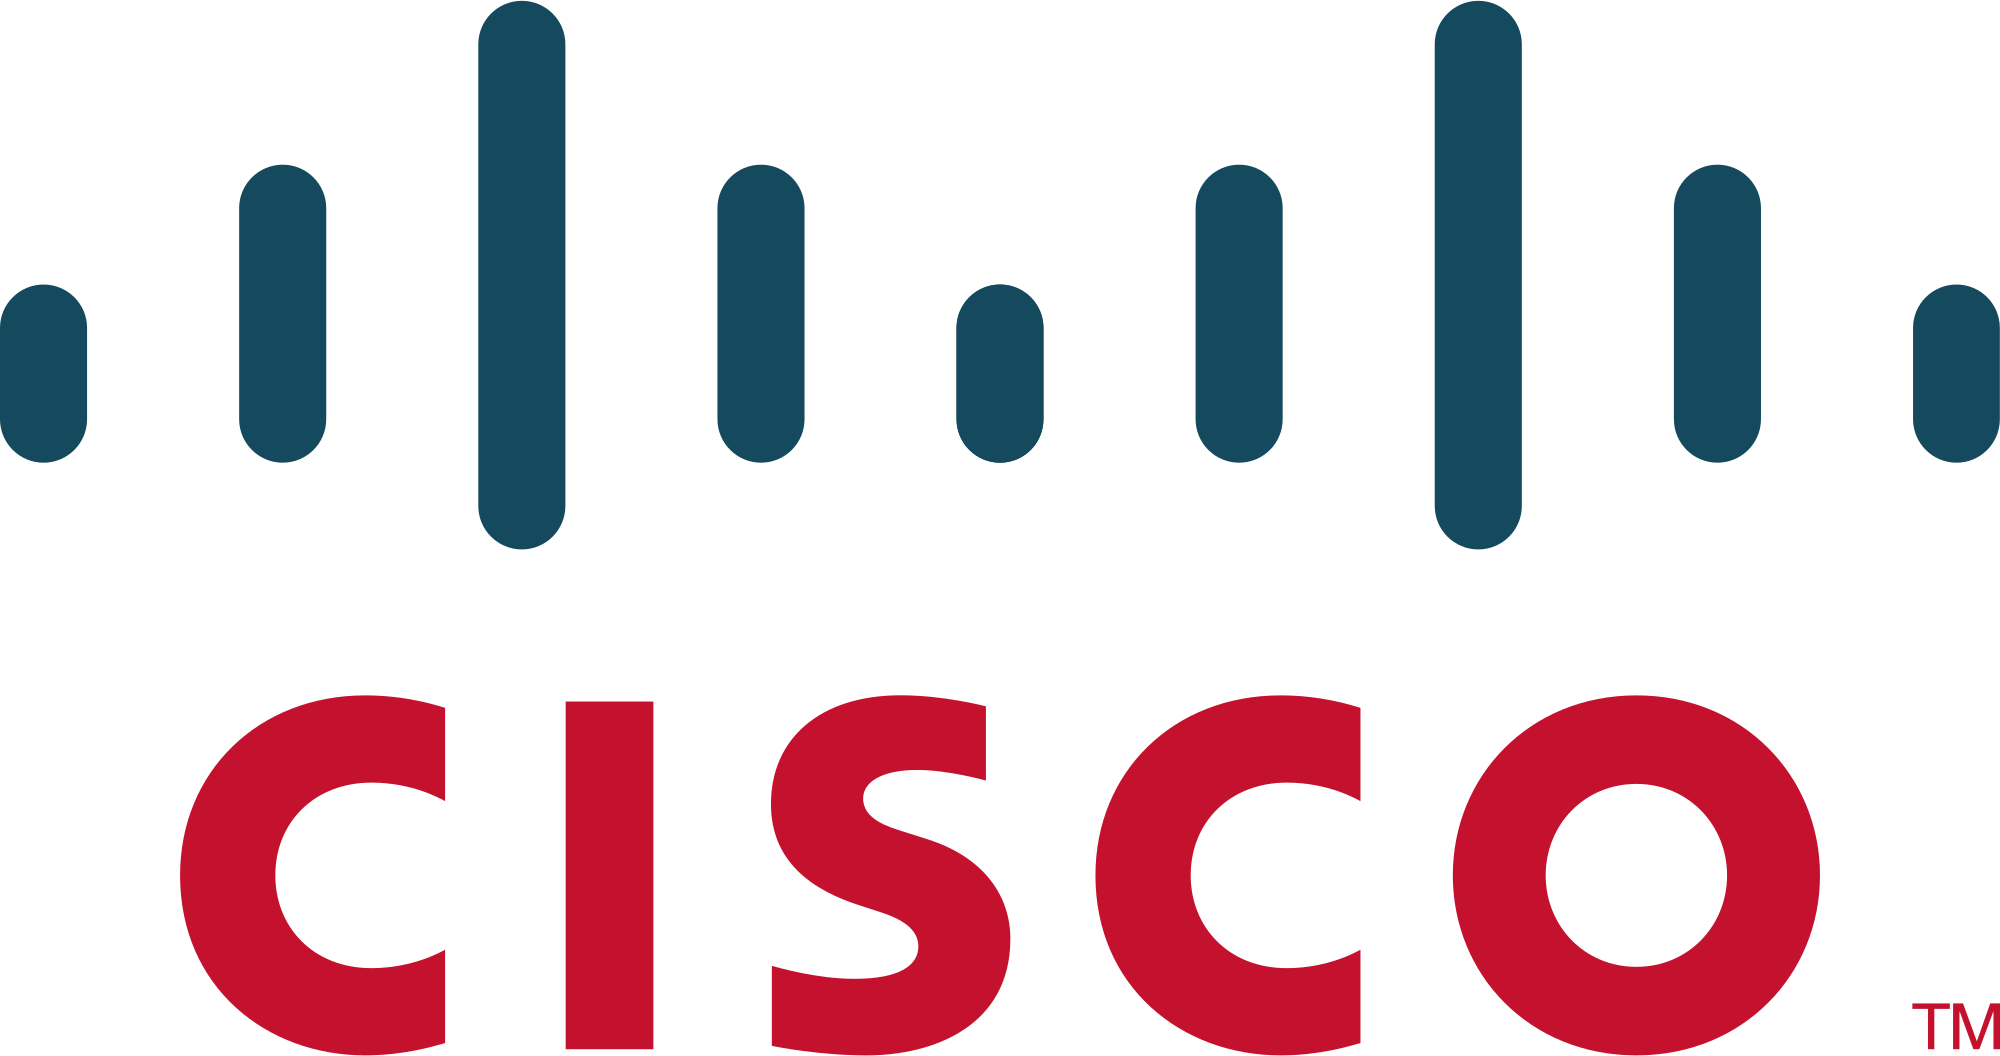 2000px-Cisco_logo